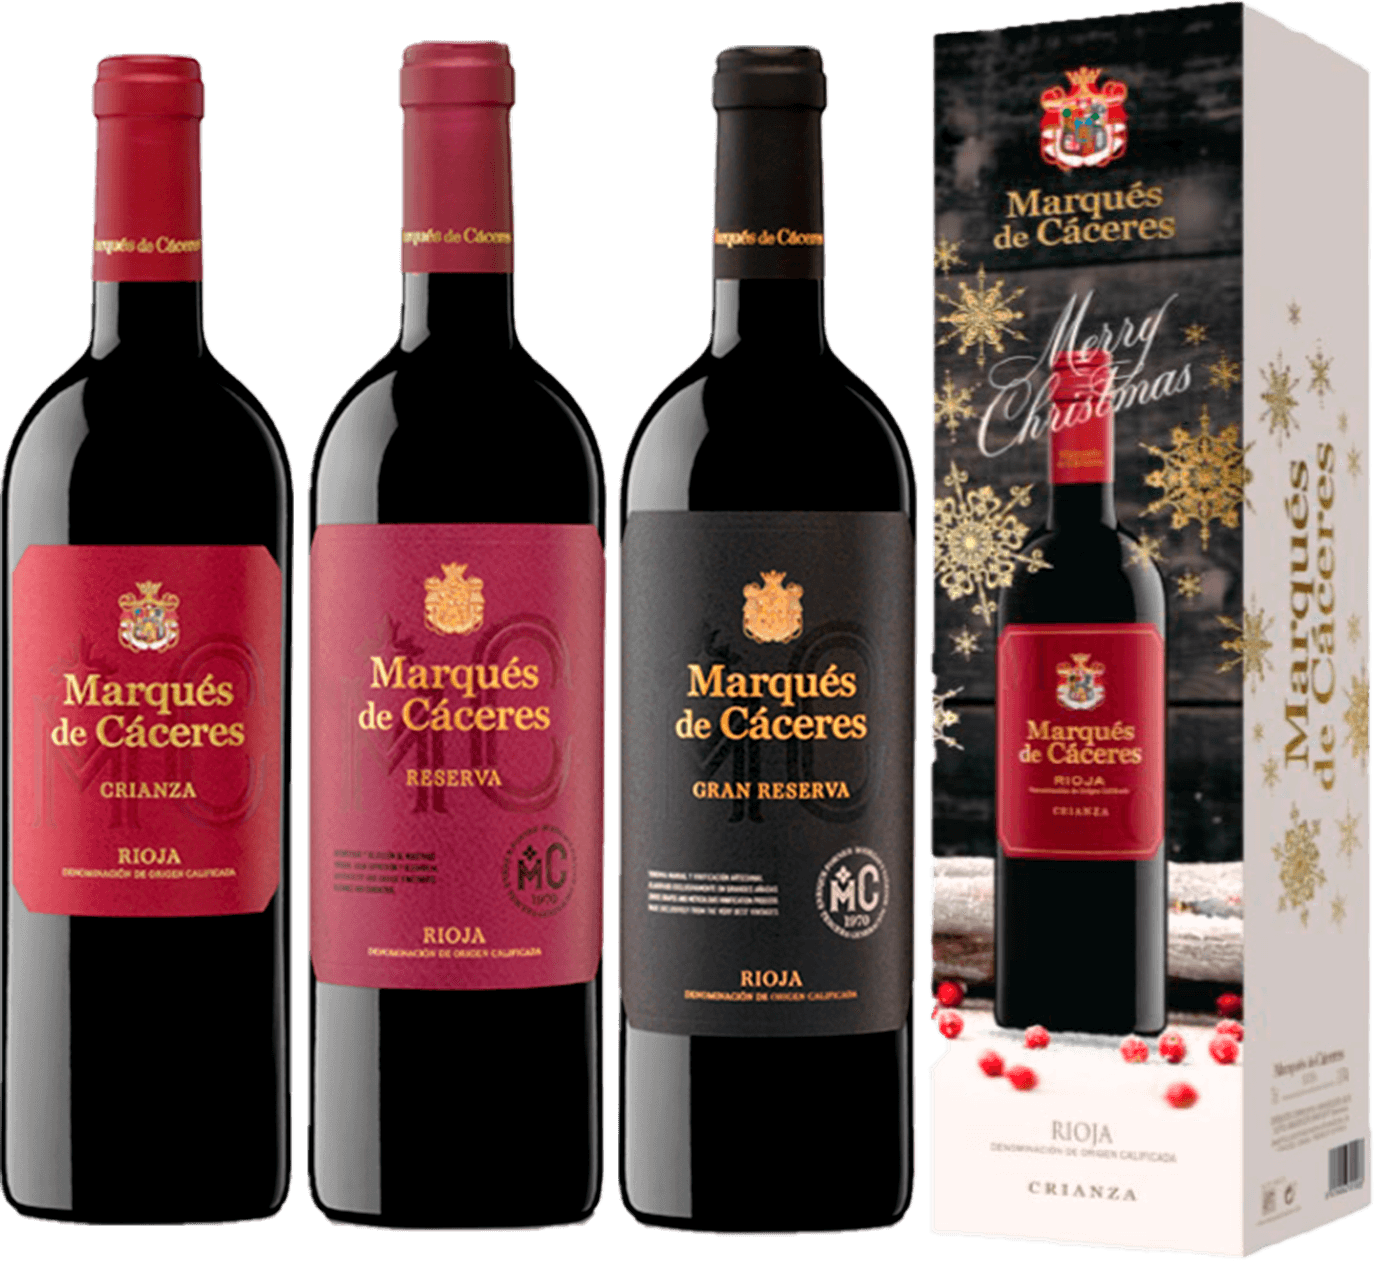 Botellas de vinos Marques de Caceres Rioja con una variedad de uvas Tempranillo mayoritariamente, con pequeños aportes de Garnacha Tinta y Graciano